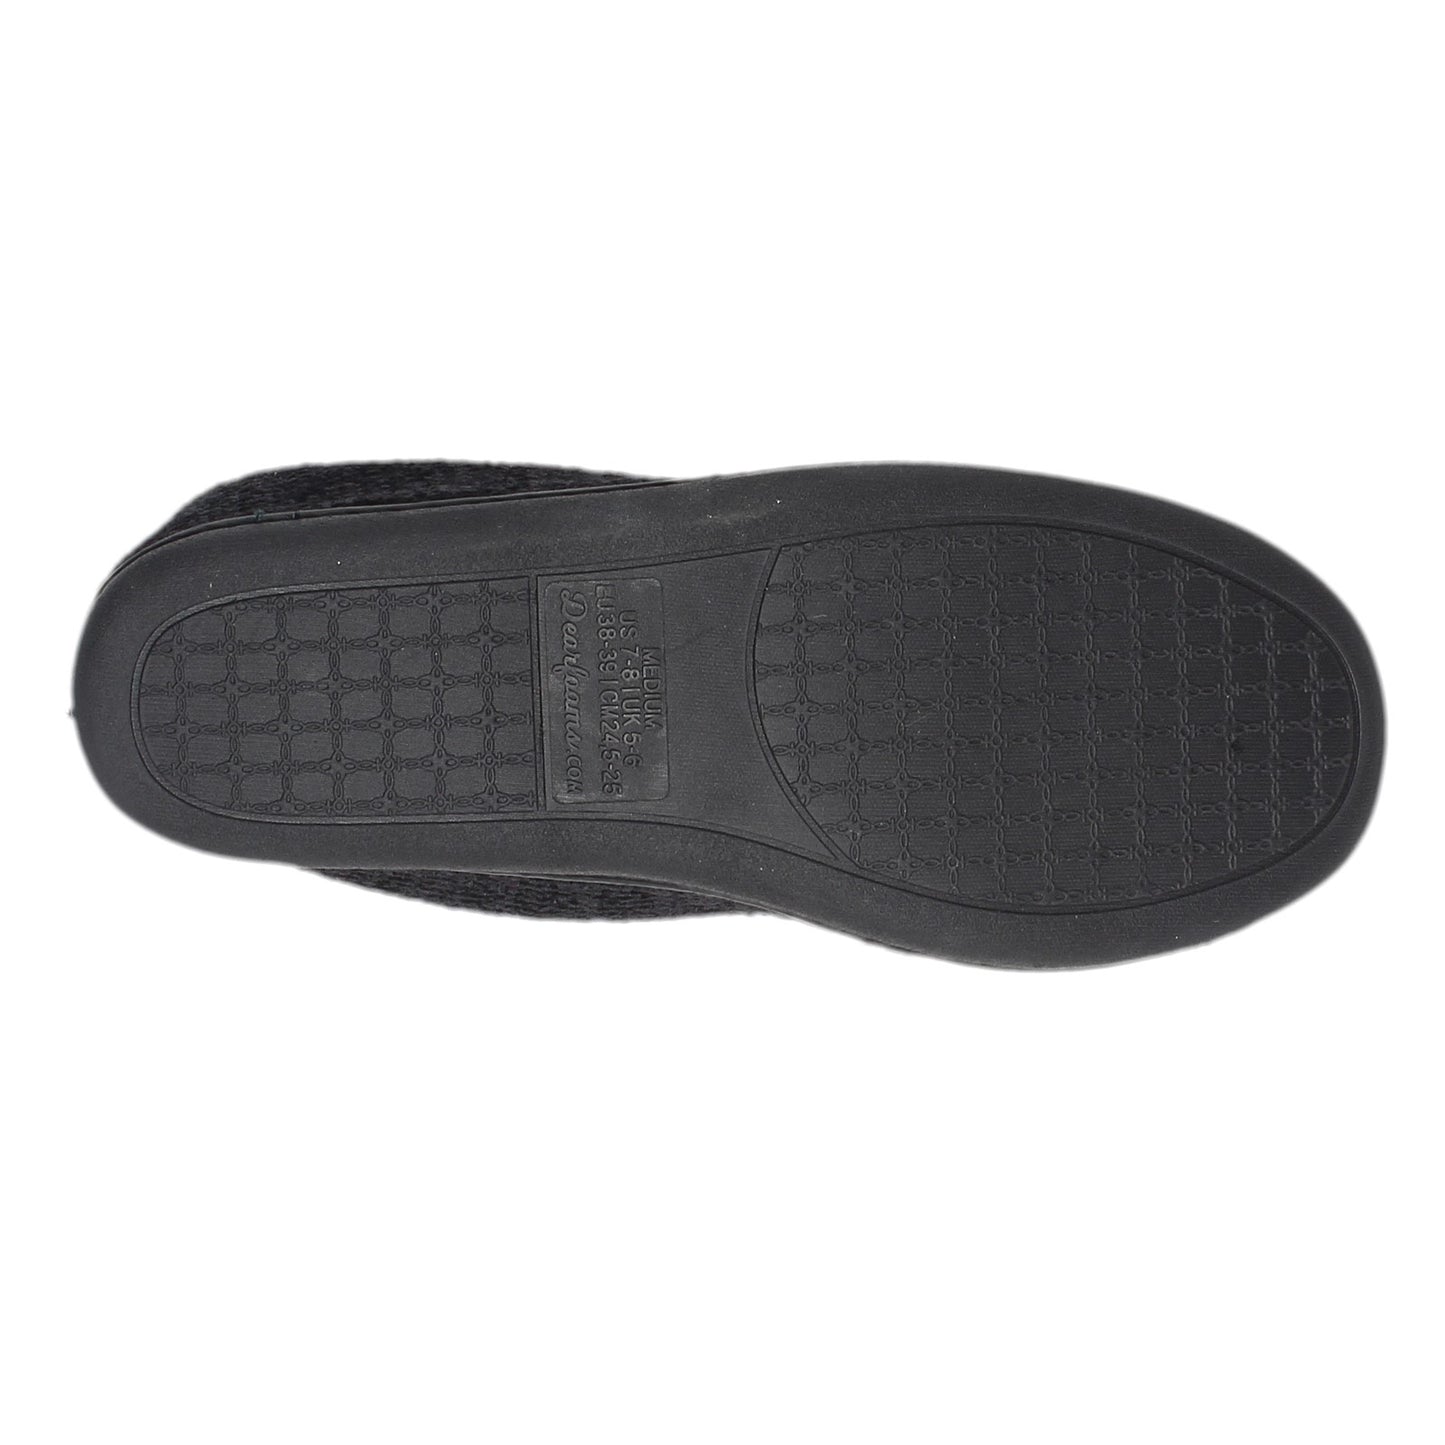 Peltz Shoes  Women's Dearfoam Rebecca Slipper BLACK CHENILLE 51005-00001